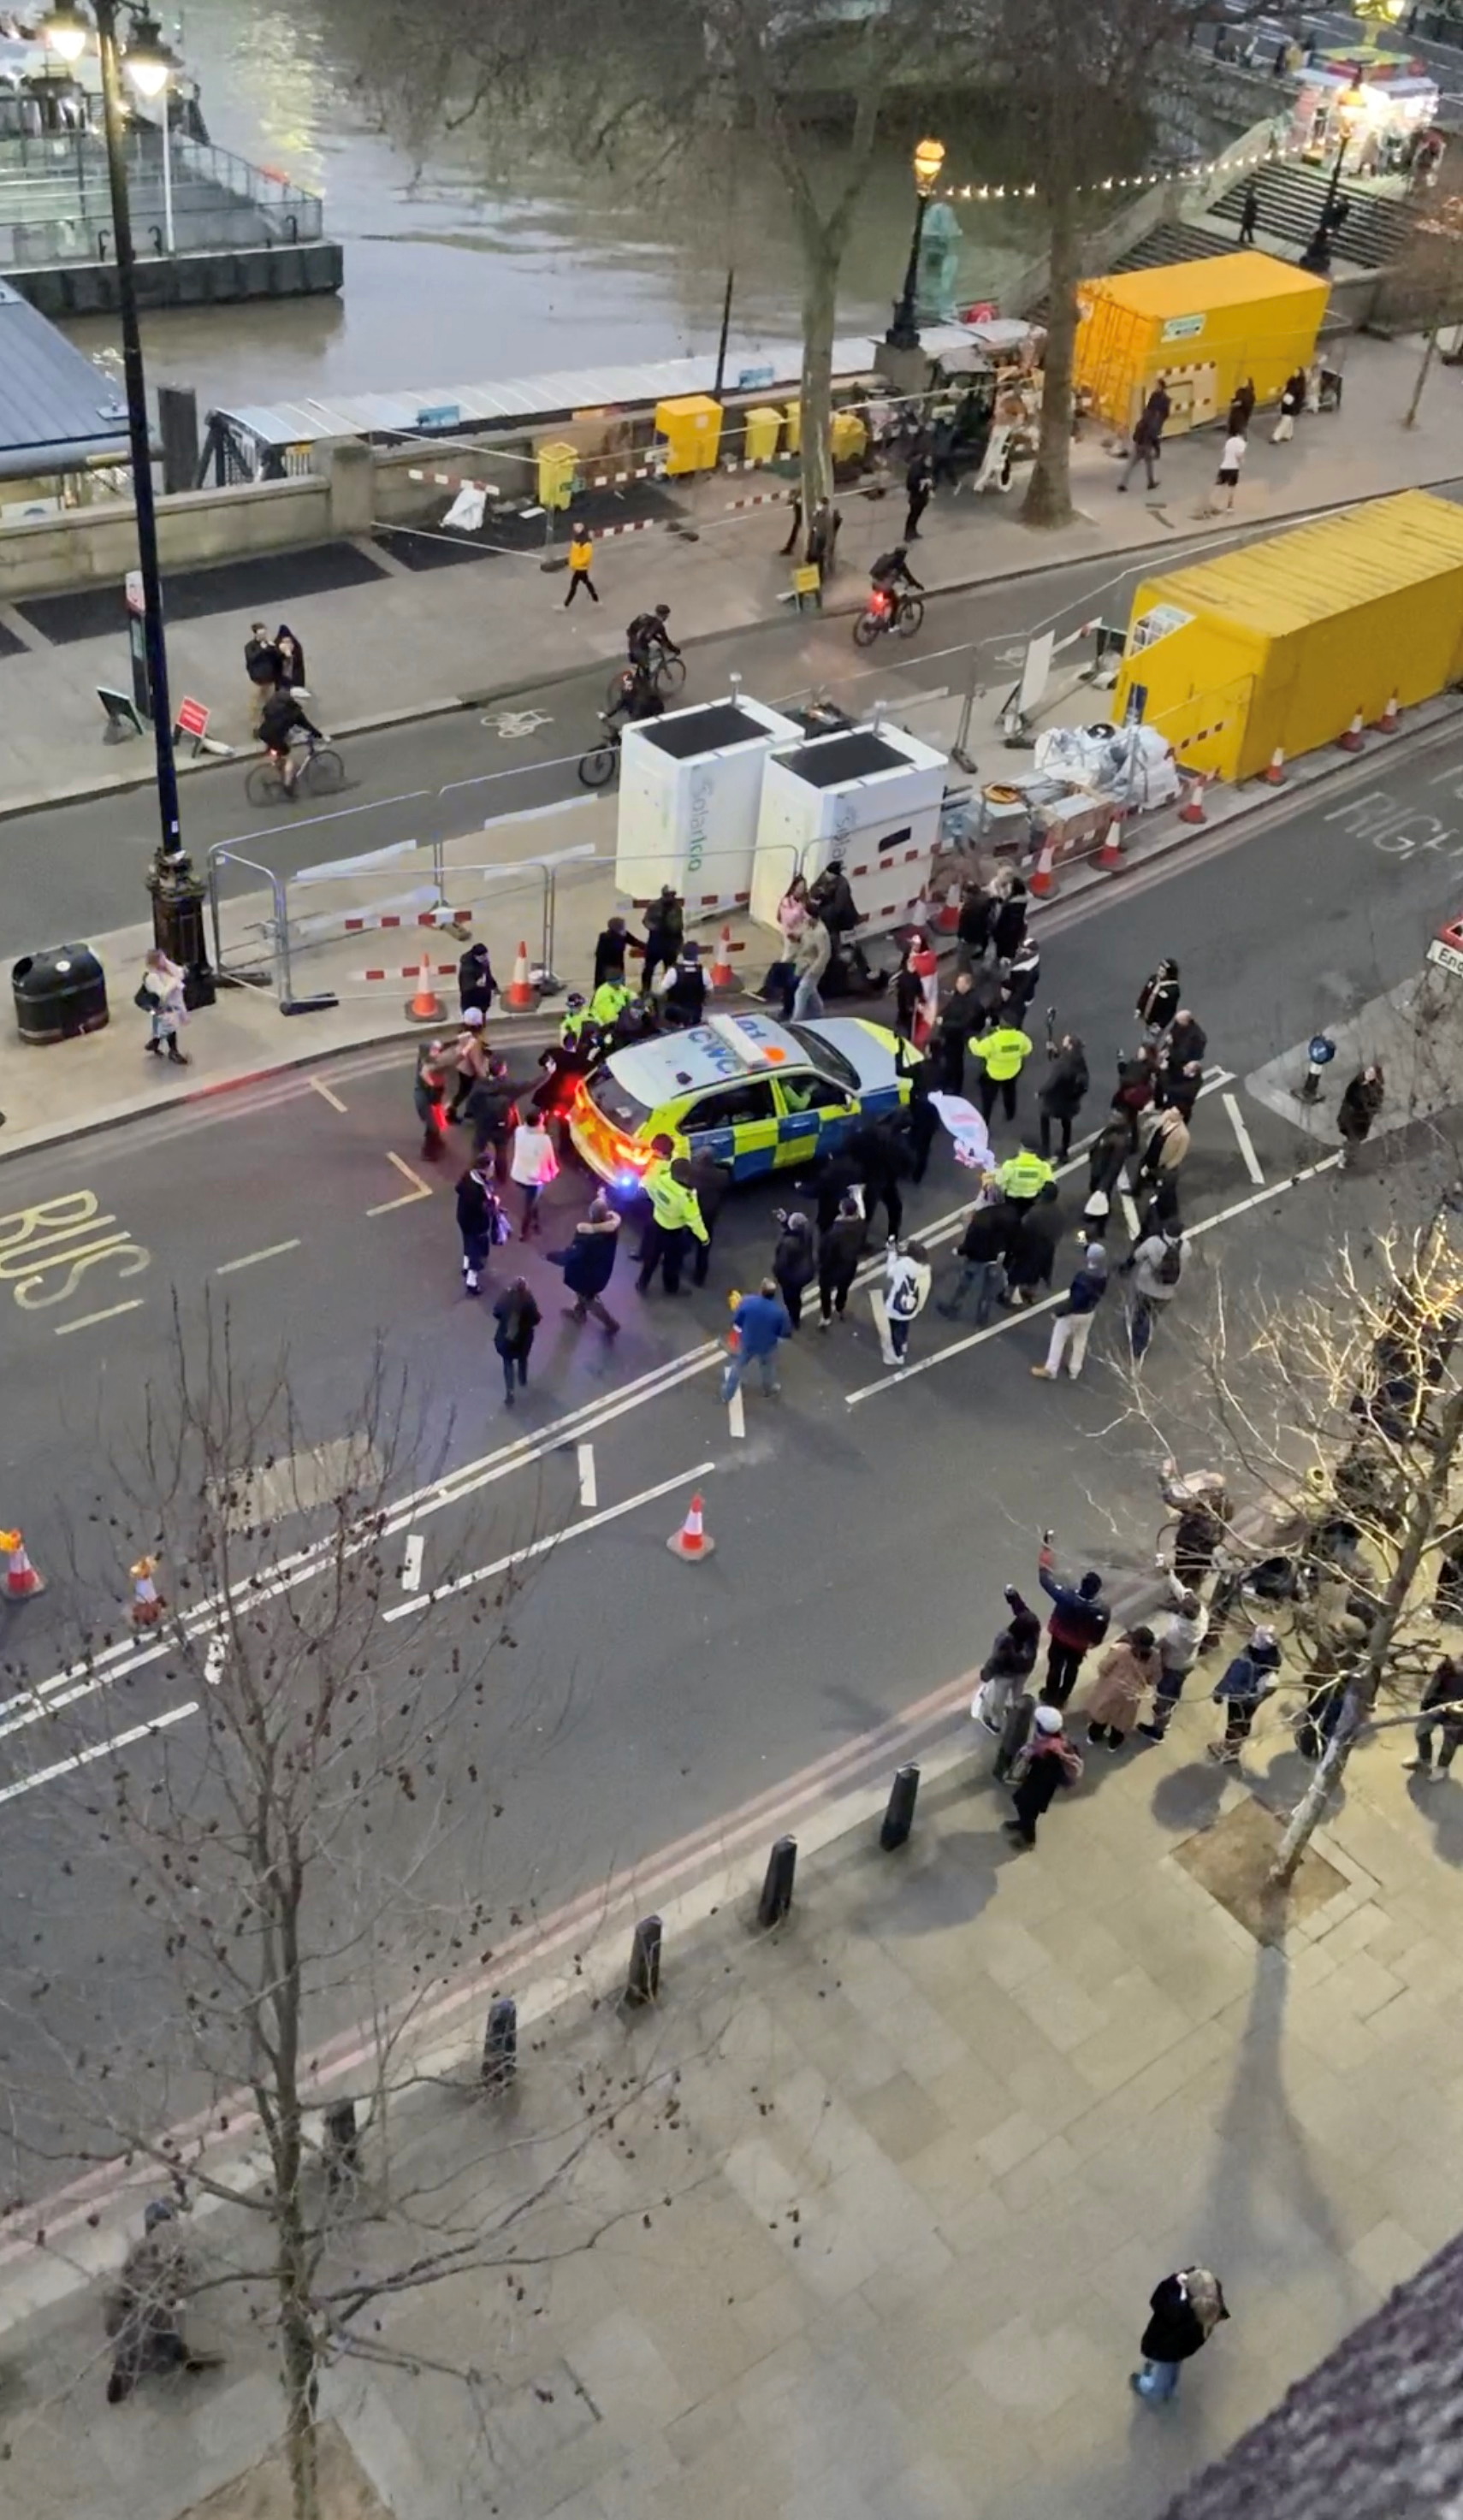 رهبر حزب کارگر بریتانیا، کیر استارمر، در ماشین پلیس نشسته است در حالی که معترضان دور او را احاطه کرده اند و شعارهایی را در لندن، بریتانیا فریاد می زنند 7 فوریه 2022، در این تصویر ثابت که از ویدئوی رسانه های اجتماعی در 8 فوریه 2022 به دست آمده است.  